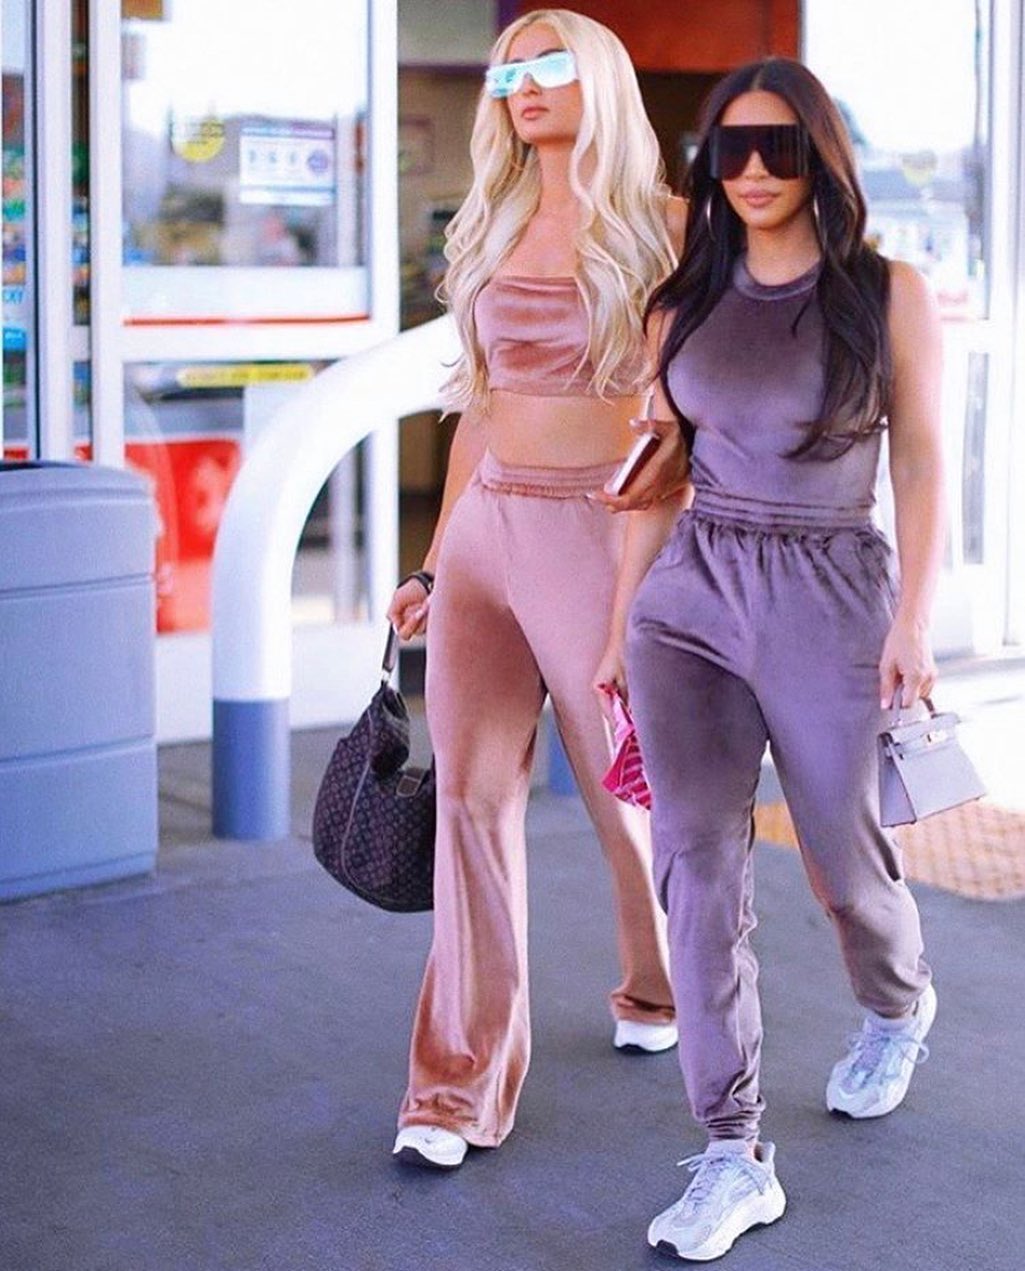 Photo n°3 : Paris Hilton et Kim Kardashian revivre les jours de gloire!